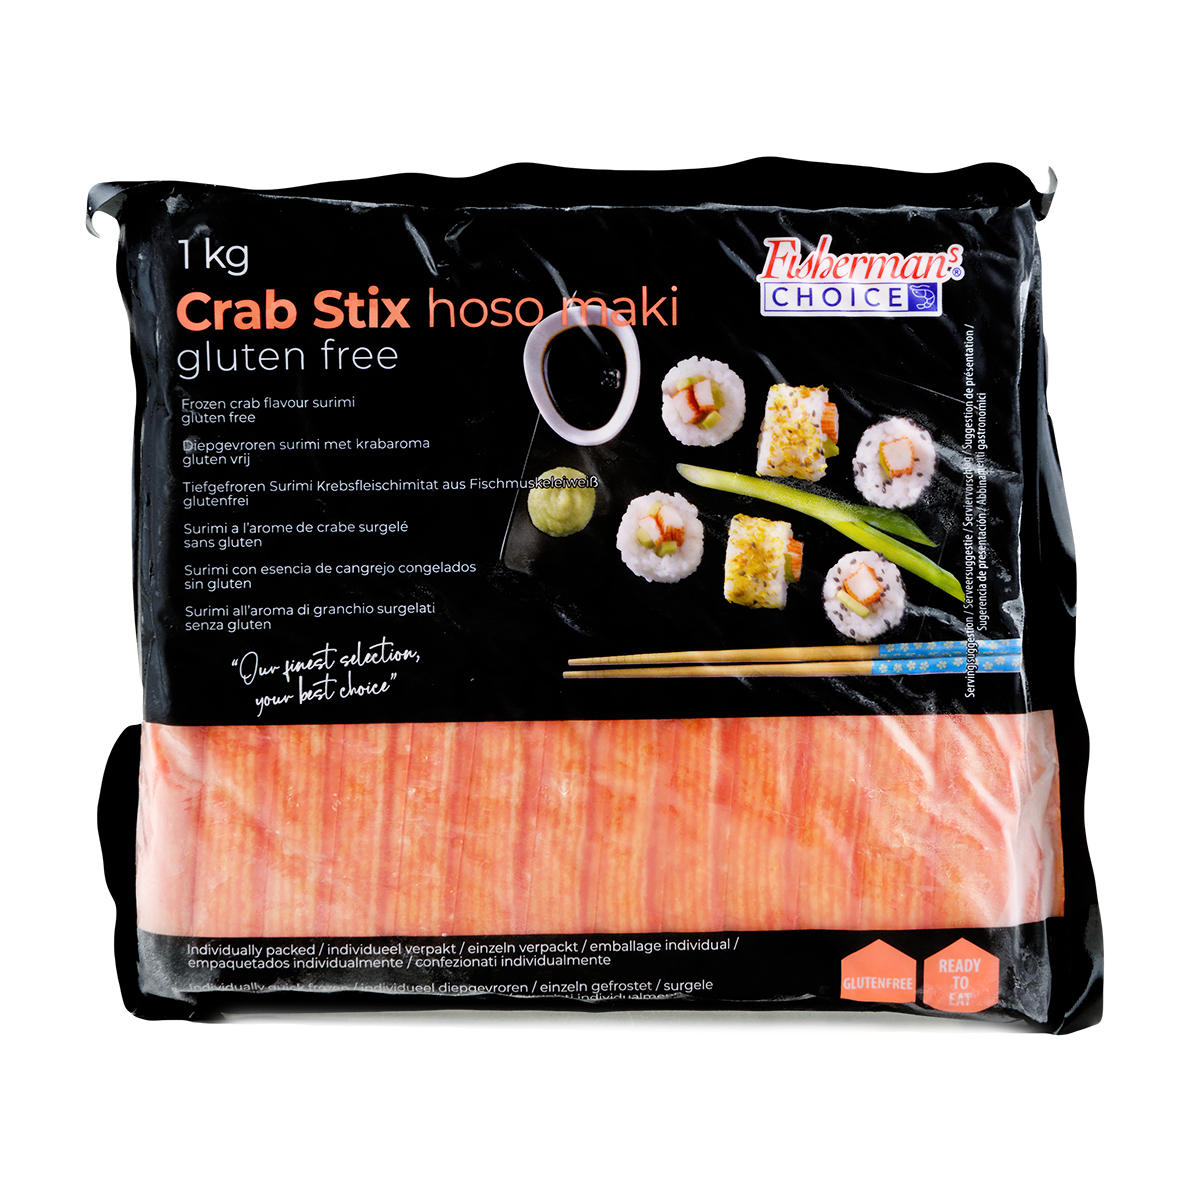 Exclusiv in magazine - Carne de crab Surimi 18cm FISHERMAN'S CHOICE 1kg, asianfood.ro